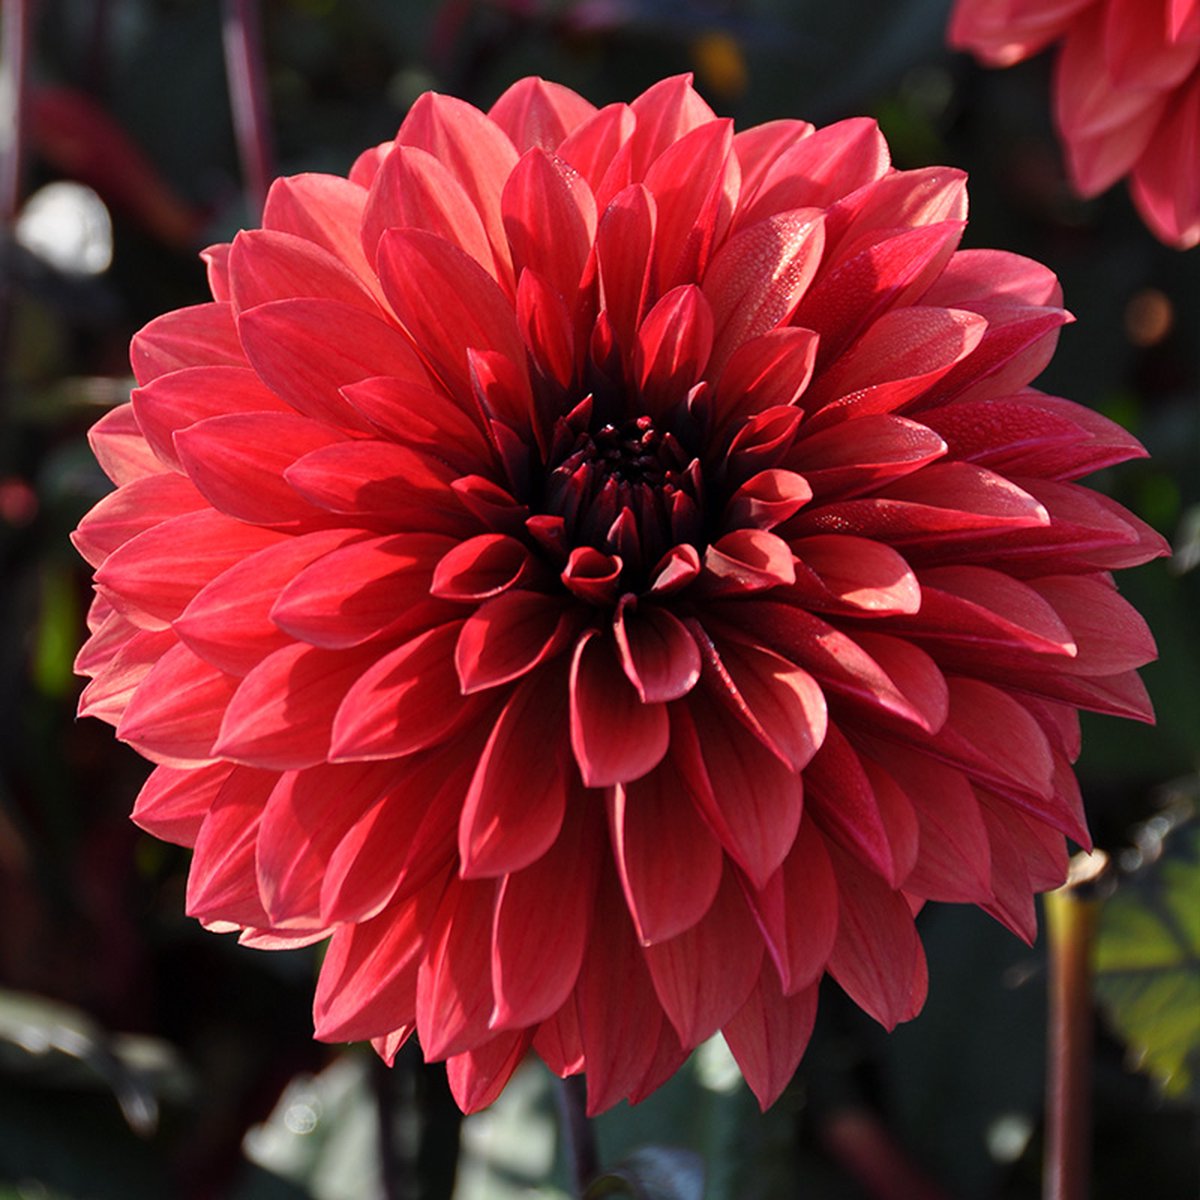 Dahlia Danique | 6 stuks | Decoratieve Dahlia | Knol | Oranje | Rood | Dahlia Knollen van Top Kwaliteit | 100% Bloeigarantie | QFB Gardening